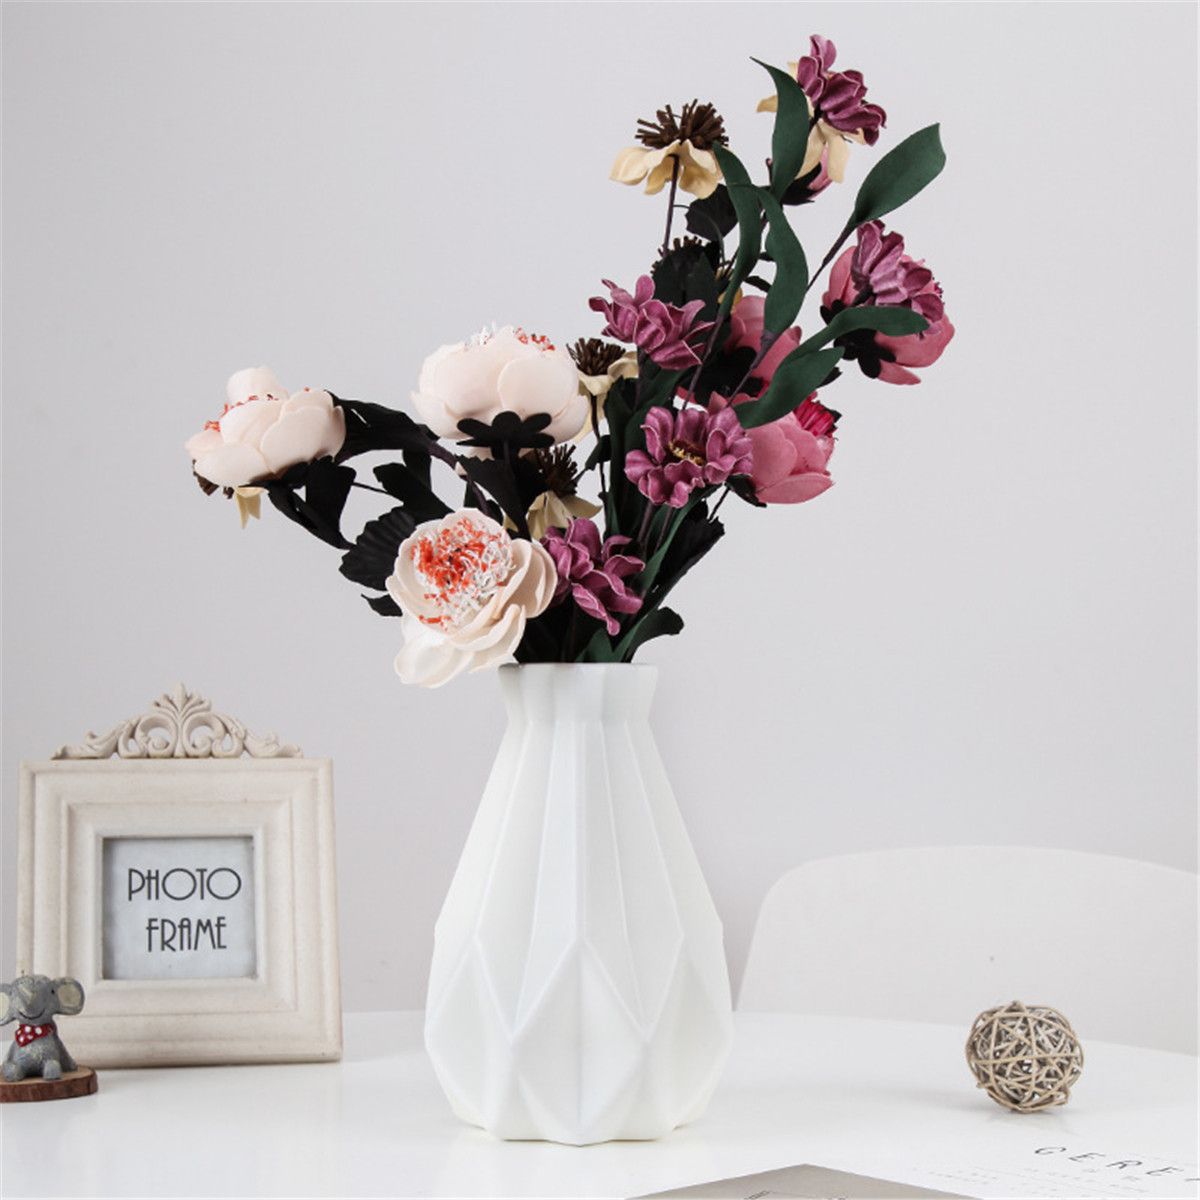 Origami-Plastic-Vase-Imitation-Ceramic-Plastic-Flower-Pot-Home-Decoration-1601949